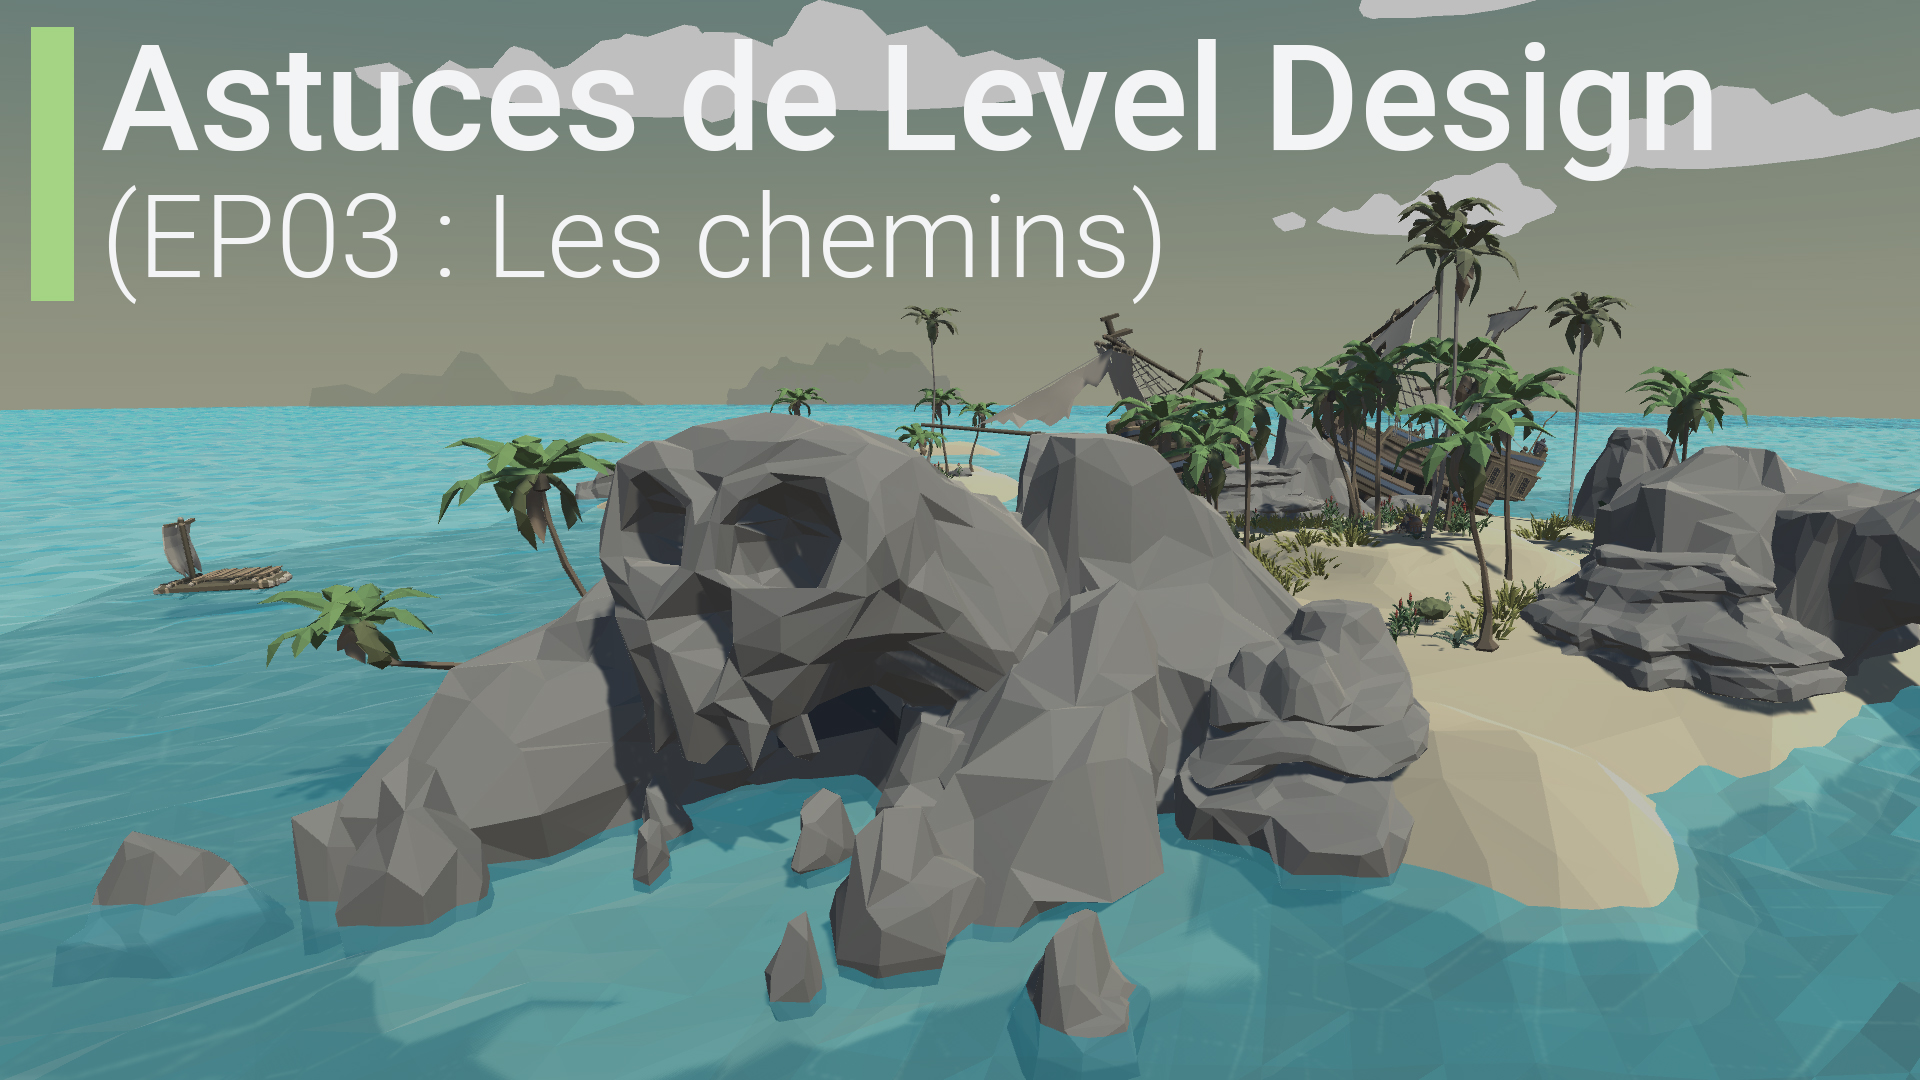 Astuces de Level Design (EP03 : Les chemins / Paths)